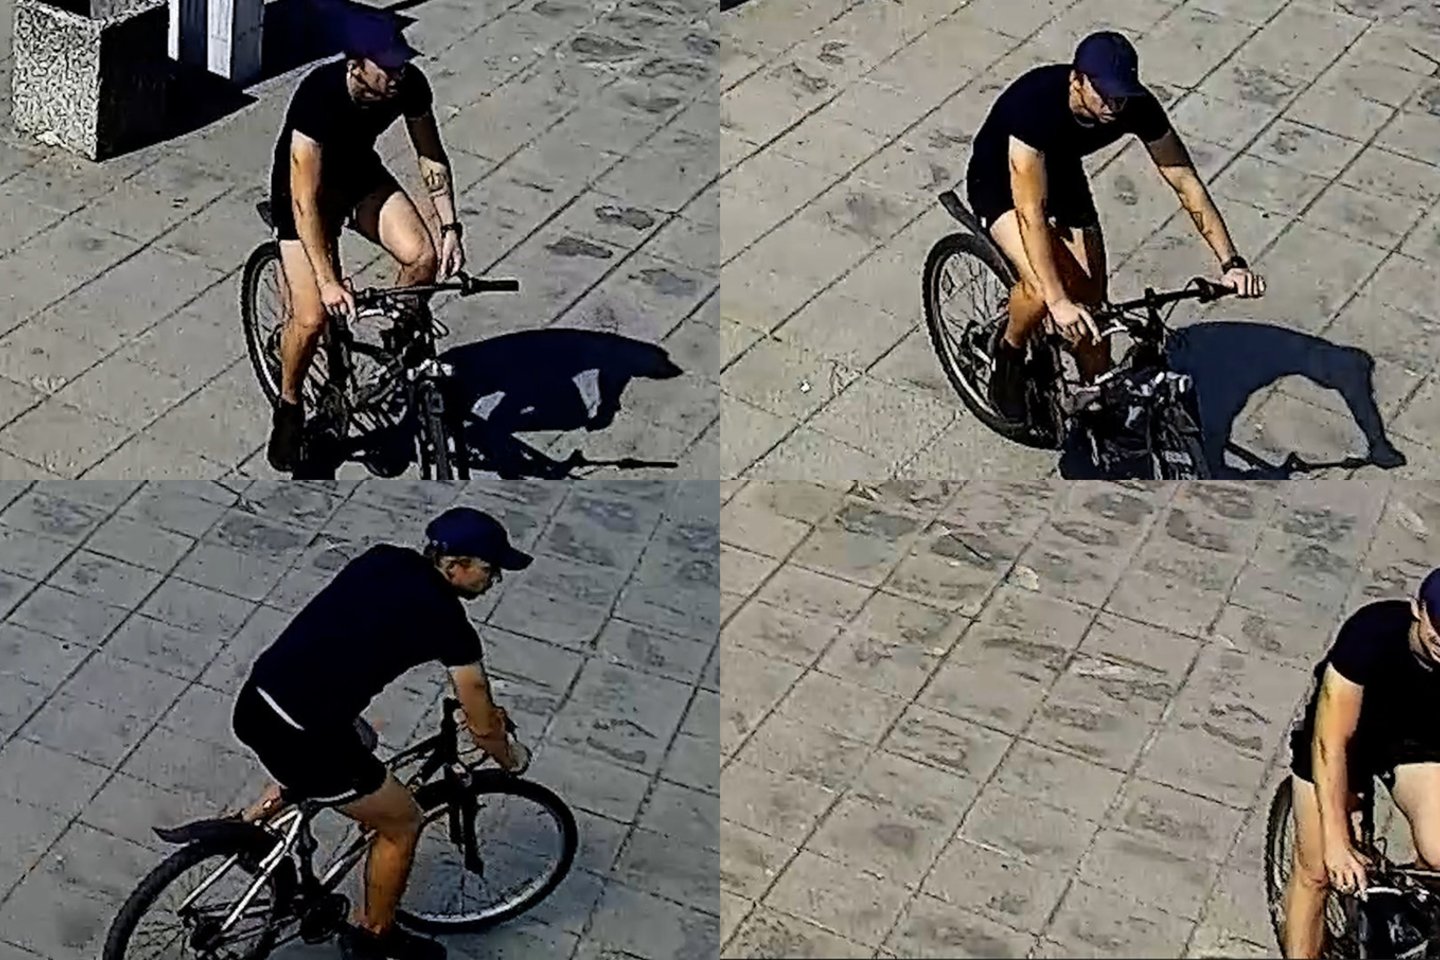  Policija norėtų pabendrauti su šiuo dviratininku.<br> Klaipėdos apskrities VPK nuotr.